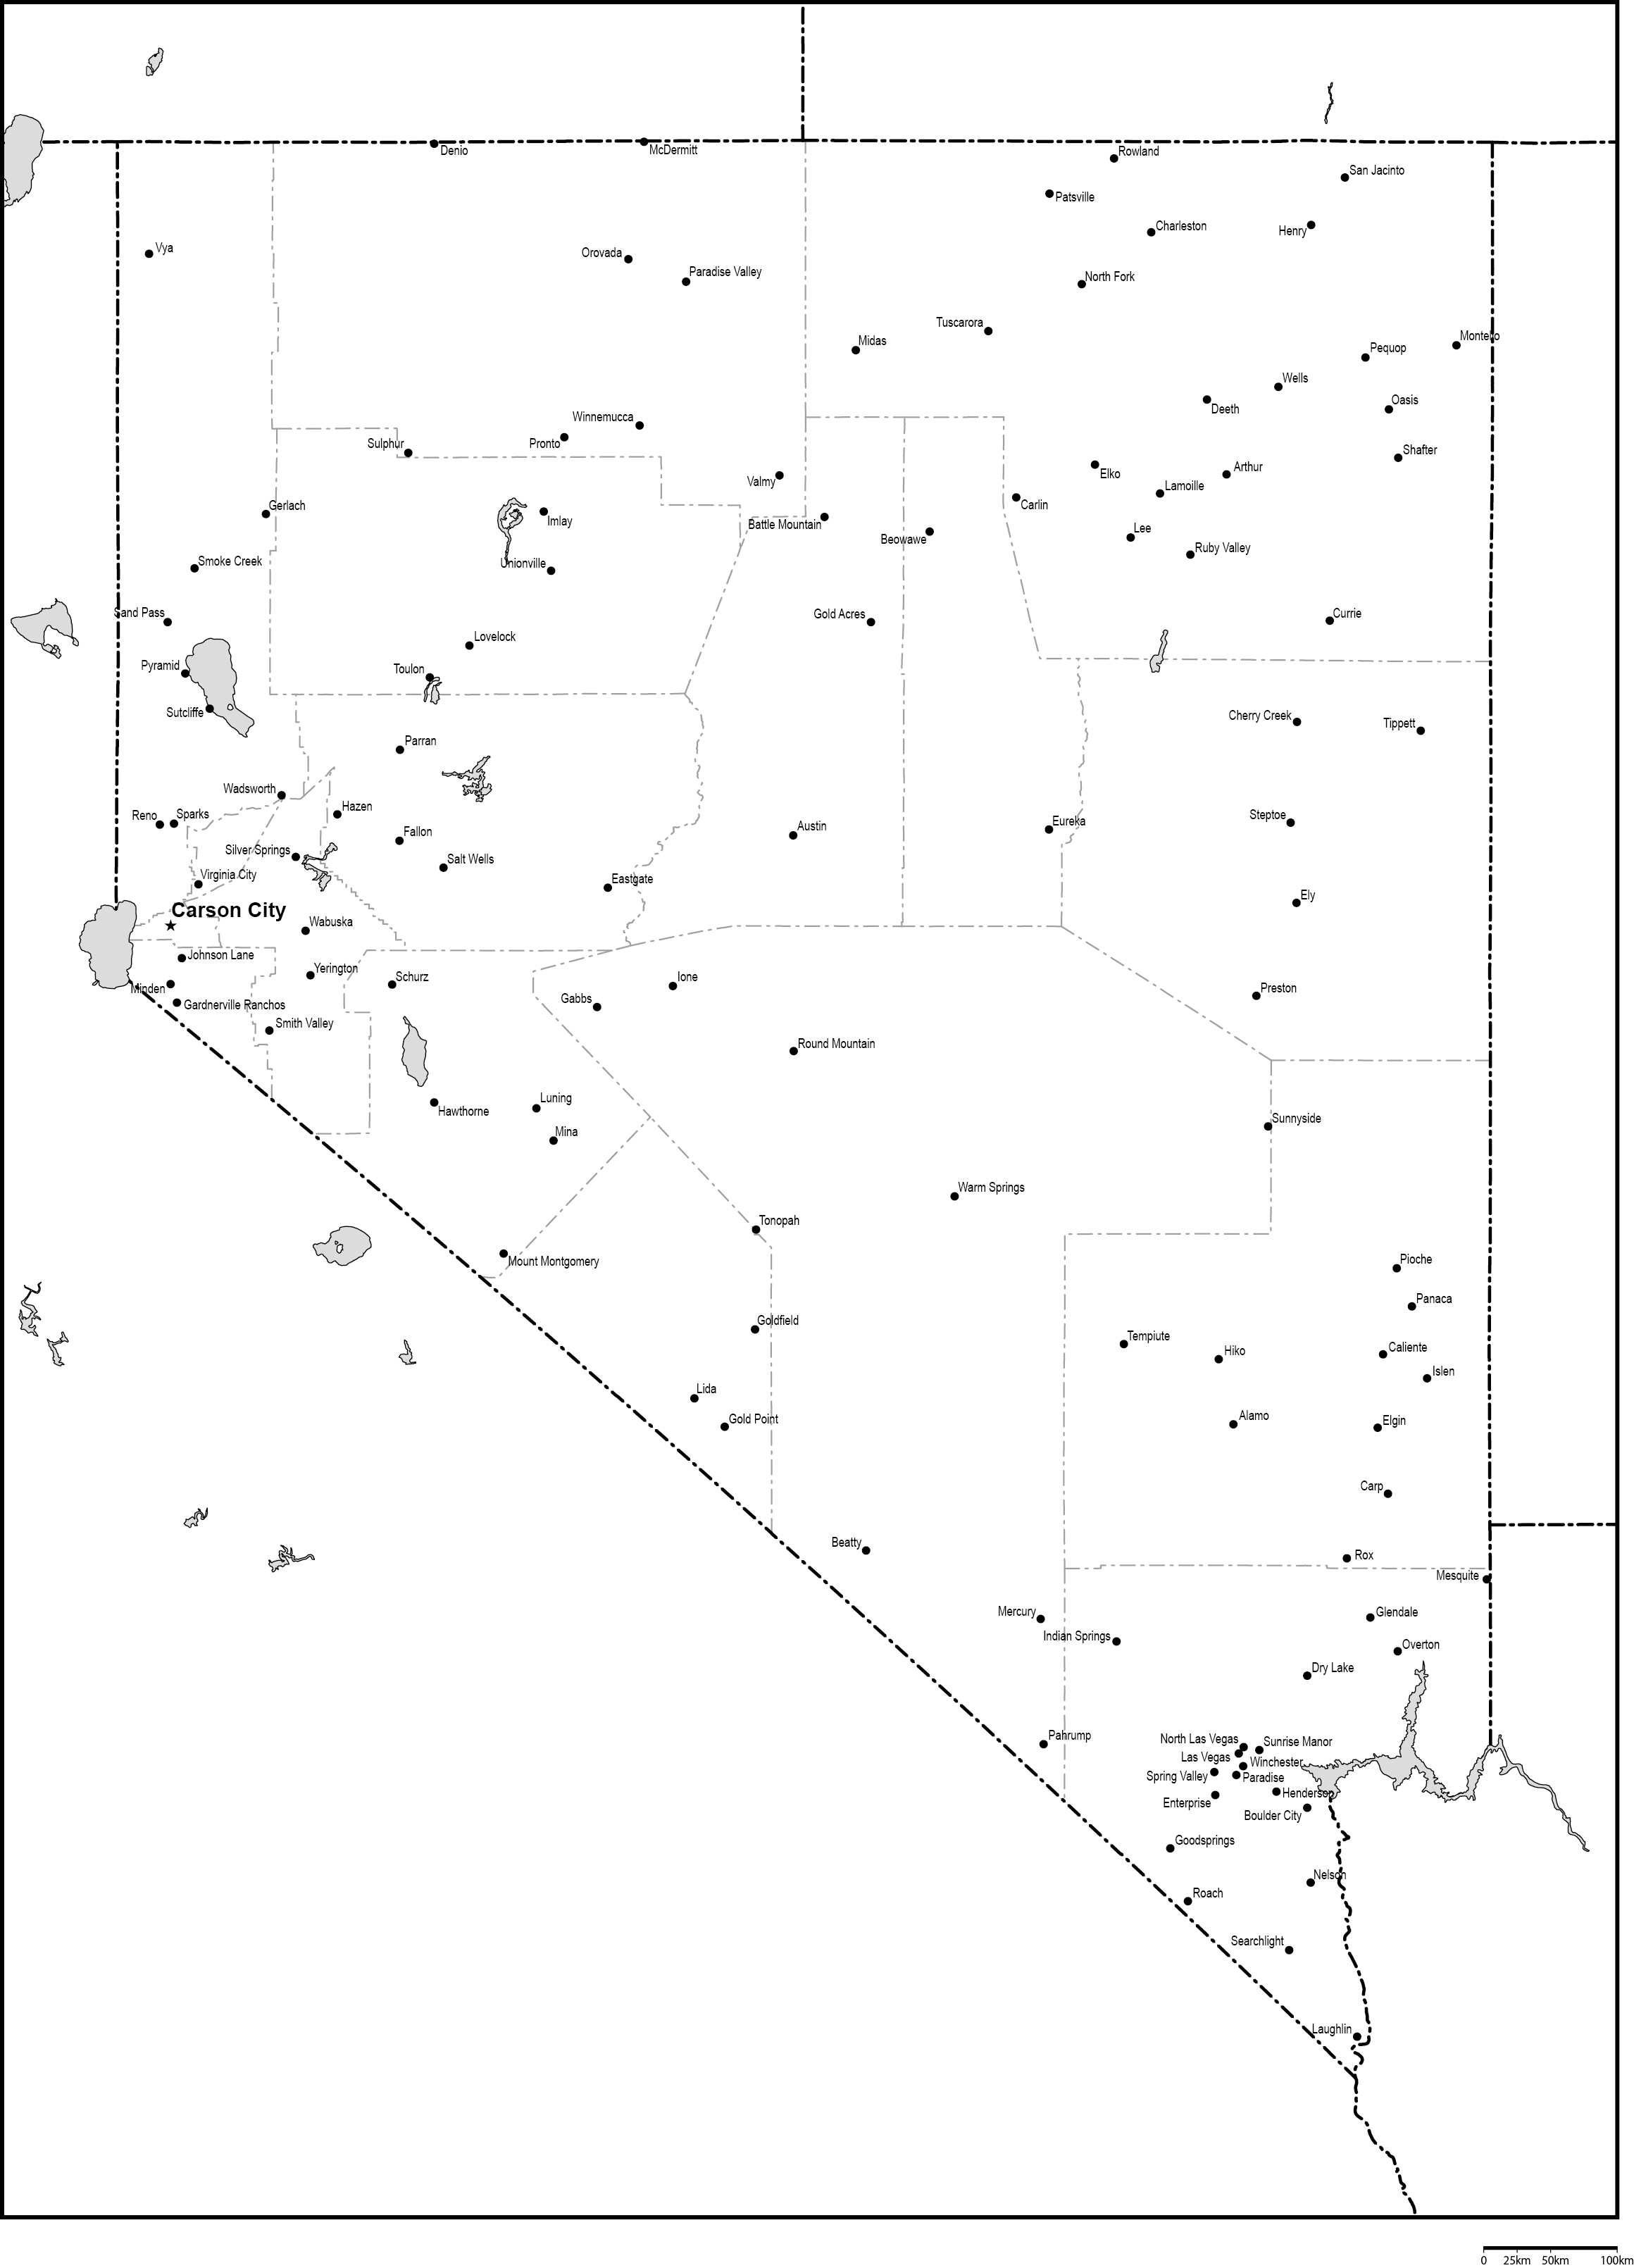 ネバダ州郡分け白地図州都・主な都市あり(英語)フリーデータの画像